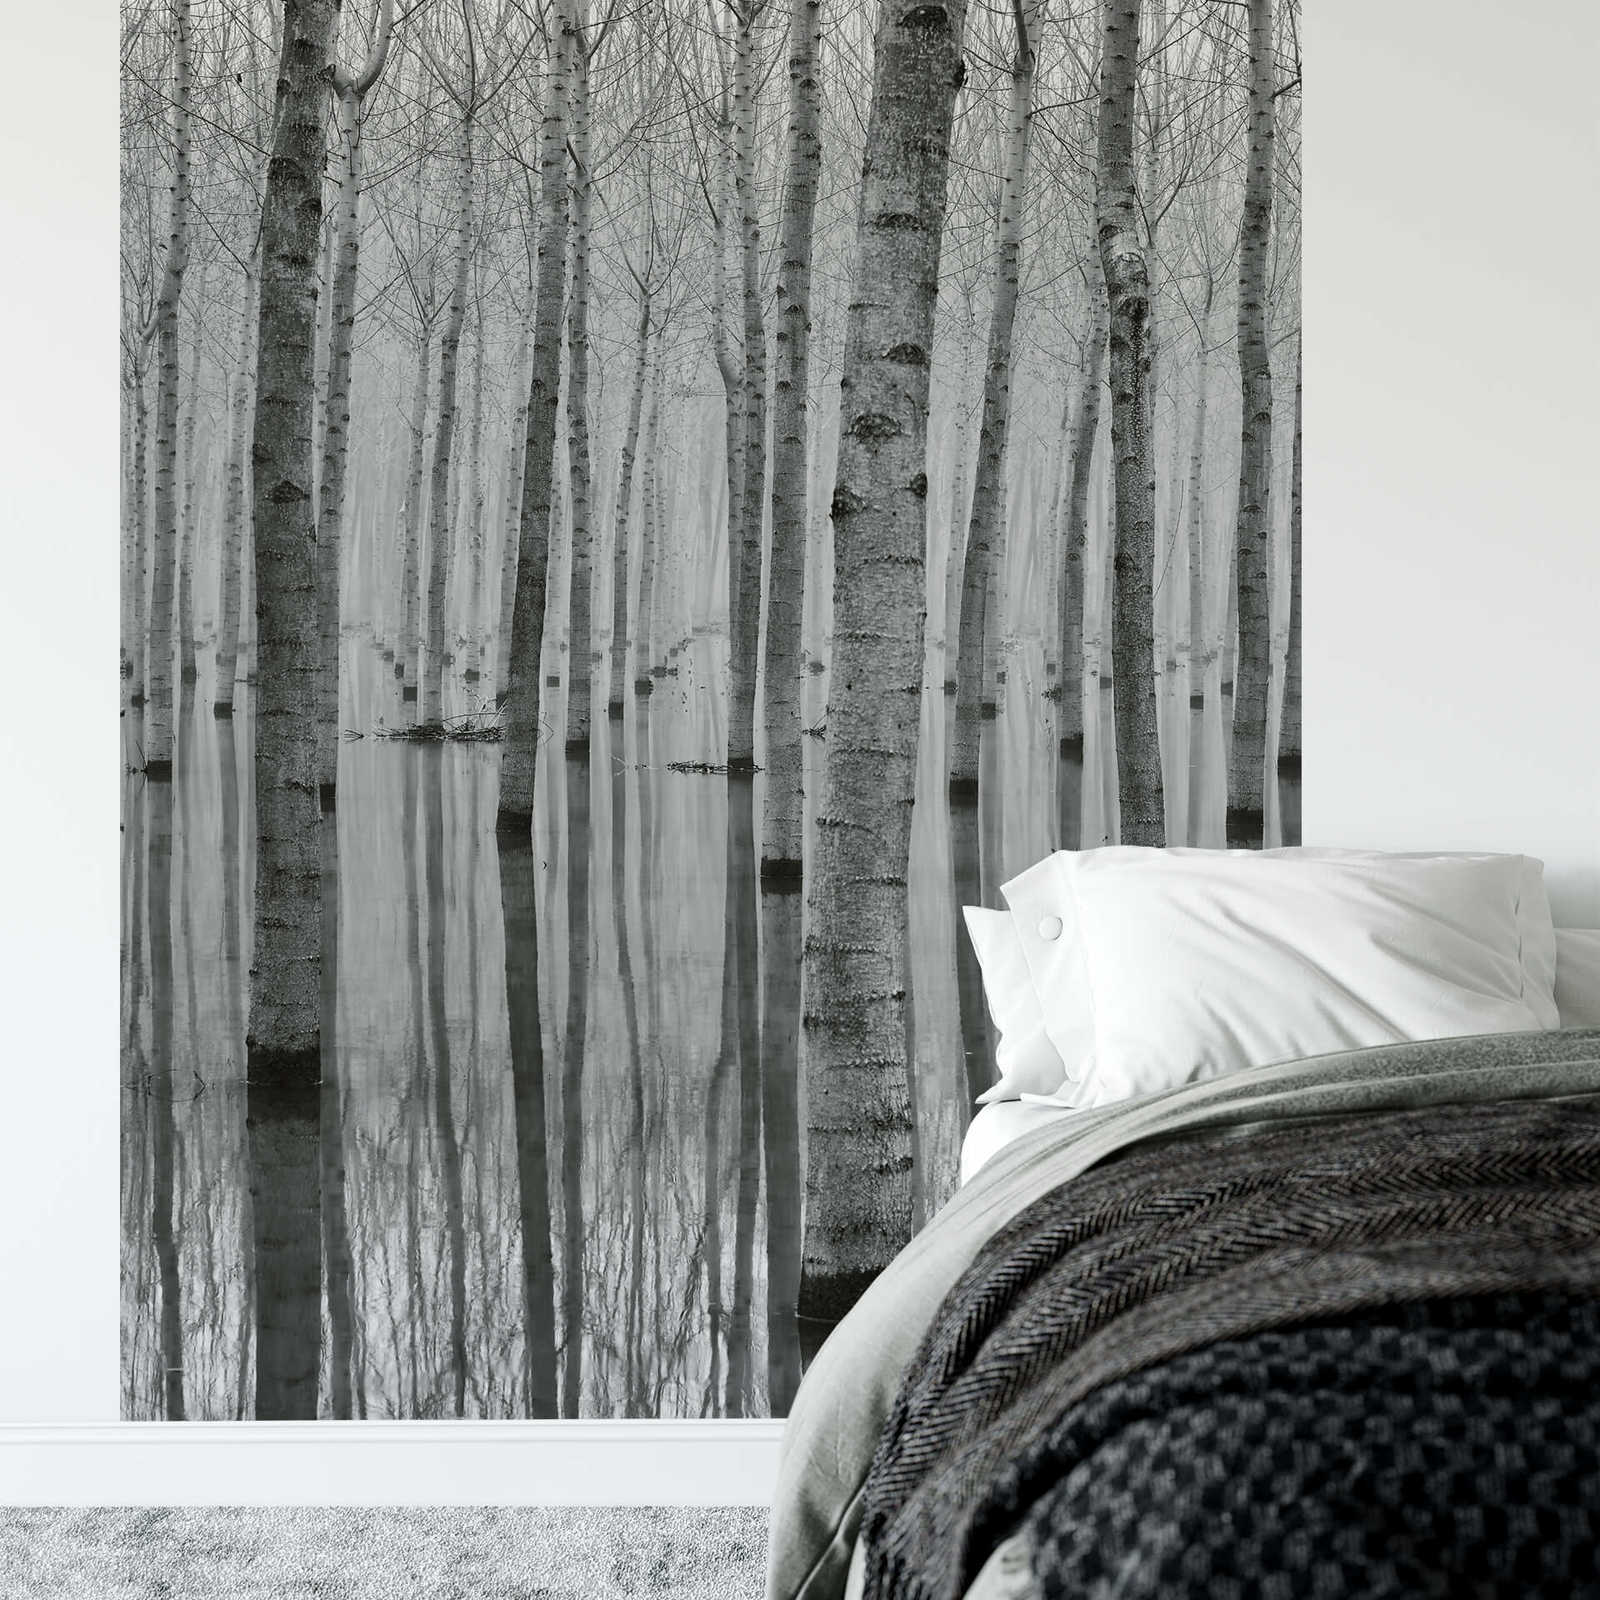             Fototapete Birkenwald im Wasser – Schwarz, Weiß, Grau
        